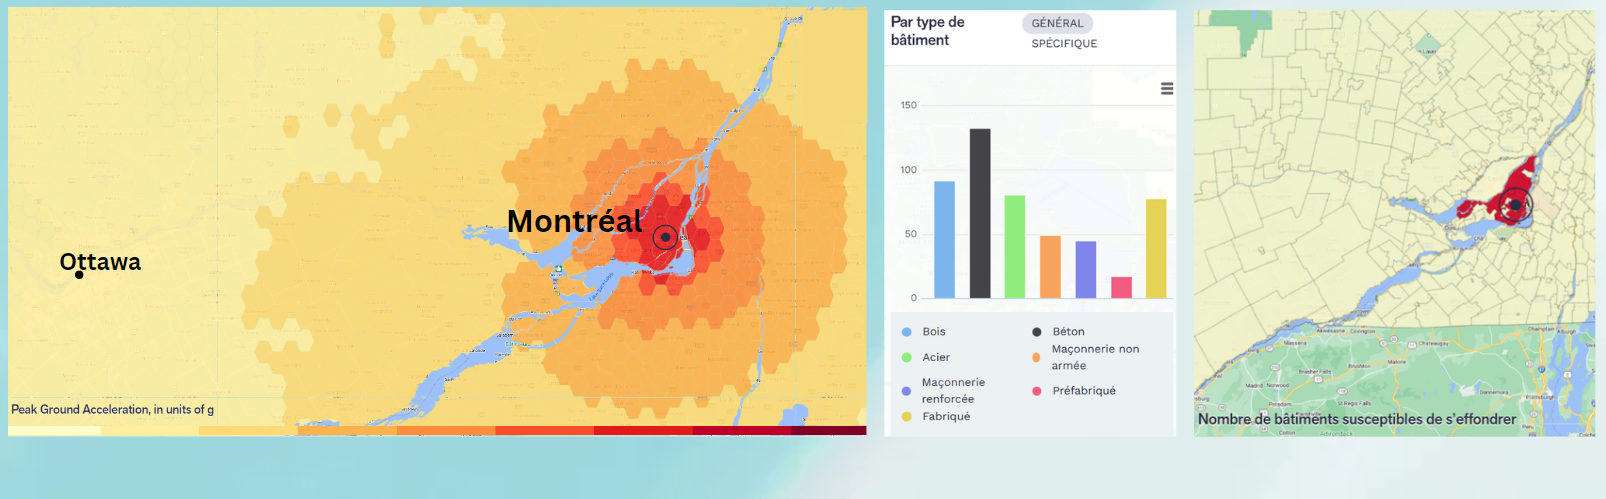 Analyse des risques liés à un tremblement de terre de magnitude 5 près de Montréal, fournie par RiskProfiler. 